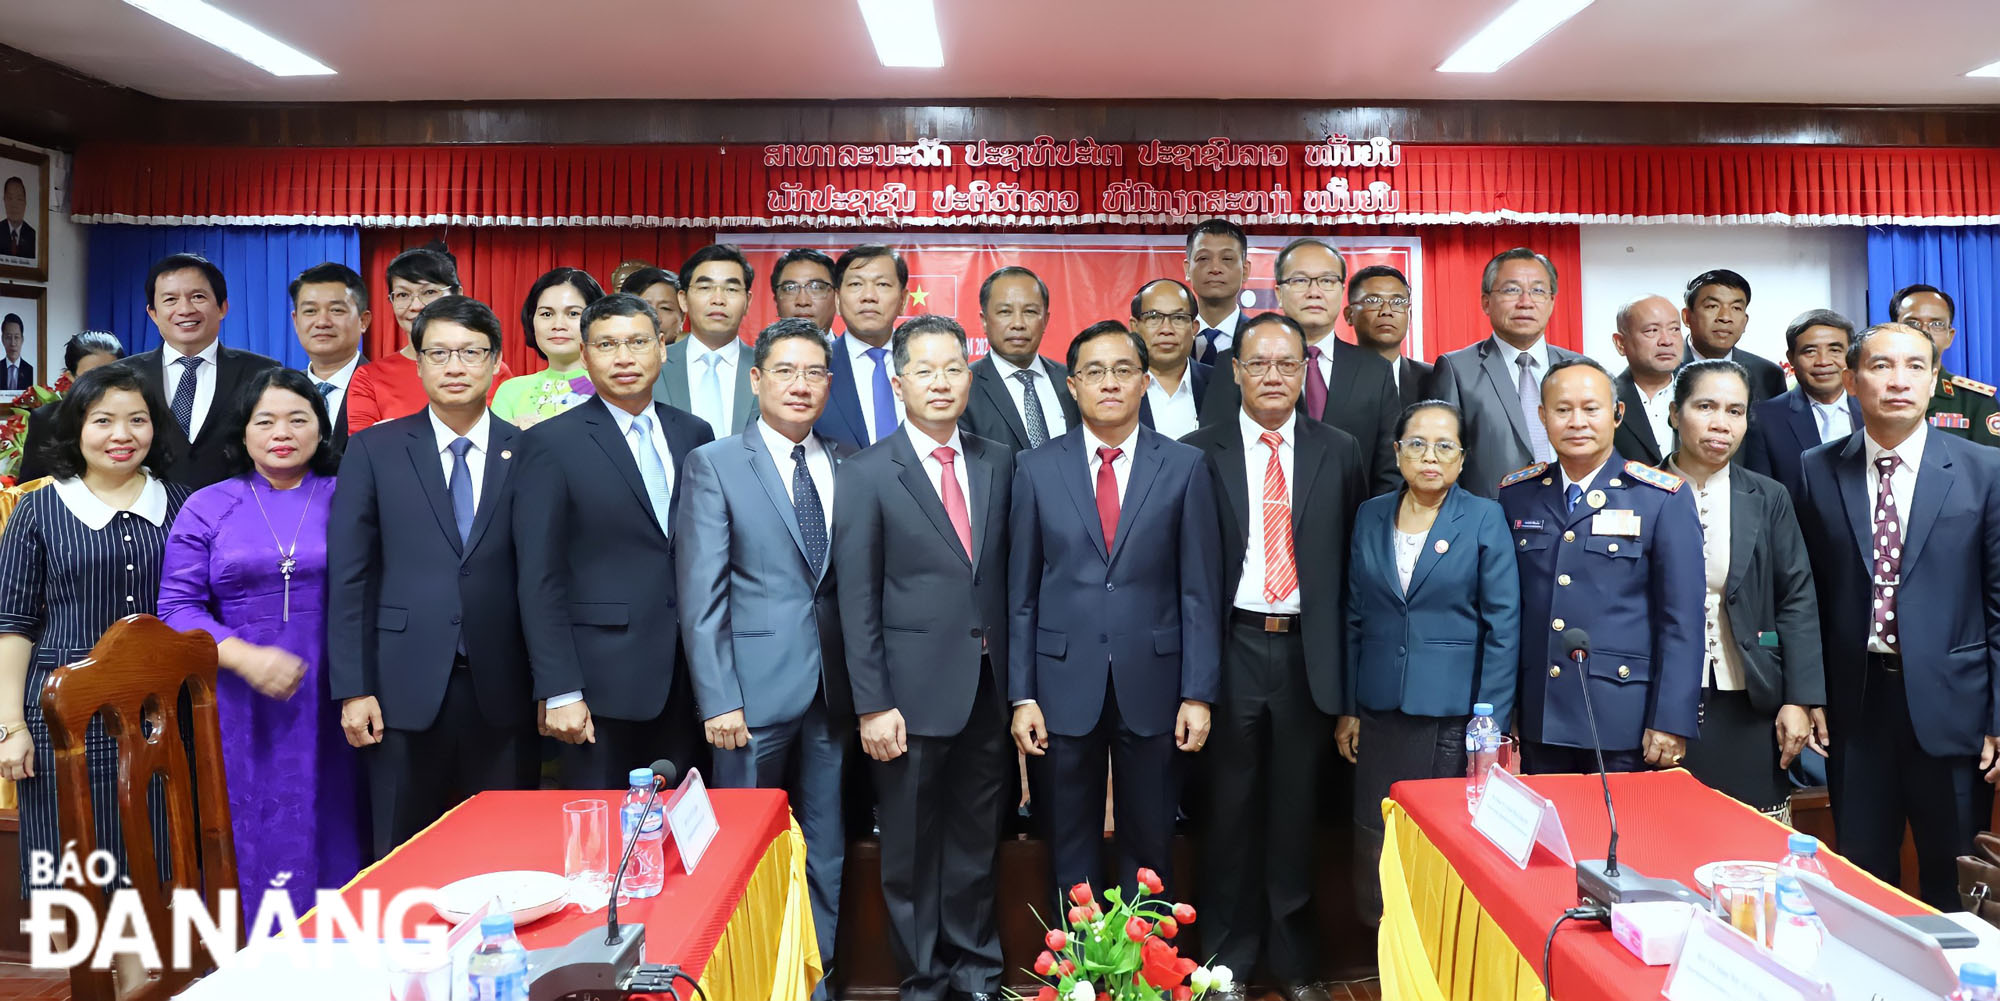 Đoàn công tác cấp cao do Bí thư Thành ủy Nguyễn Văn Quảng dẫn đầu chụp ảnh lưu niệm với lãnh đạo tỉnh Sê Kông. Ảnh: NGỌC PHÚ